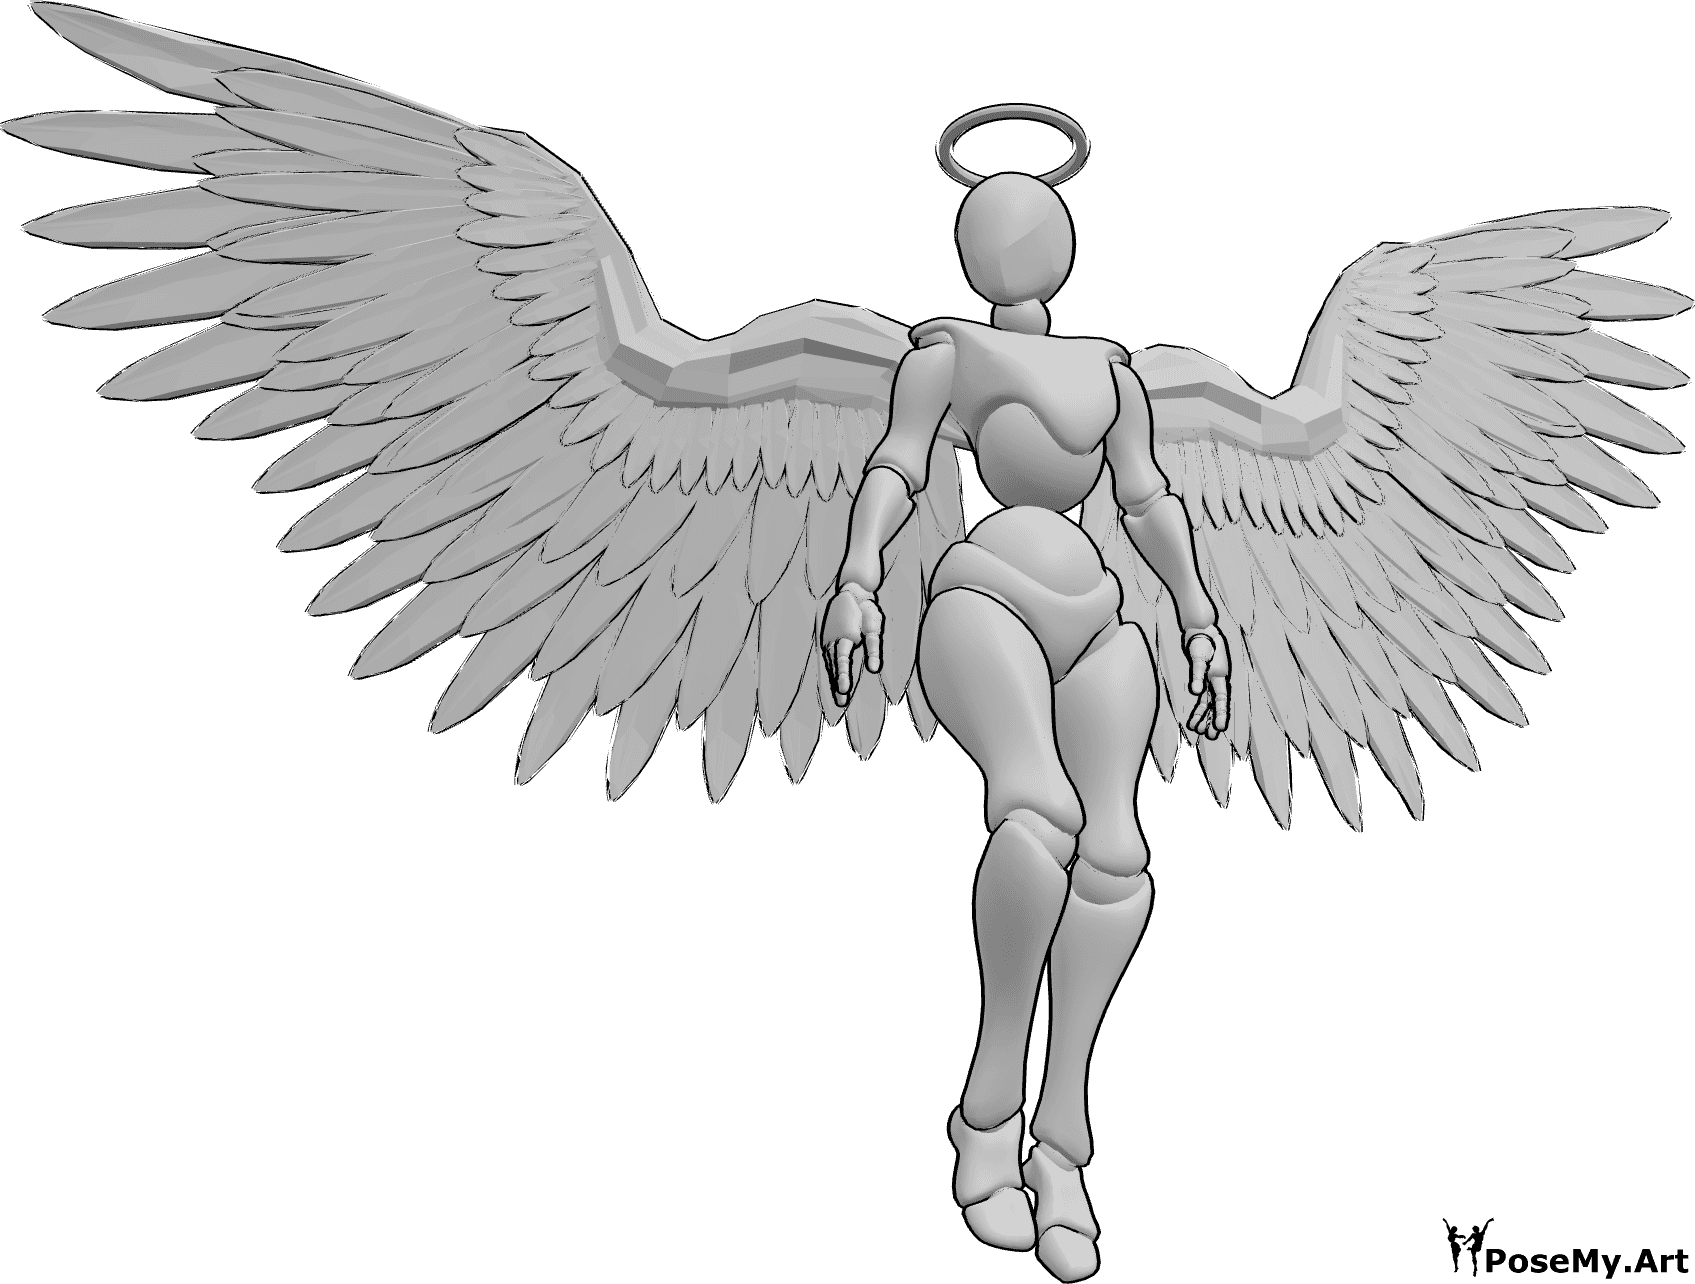 Posen-Referenz- Weibliche Engelsflügel Pose - Frau mit Engelsflügeln und Heiligenschein schwebt in der Luft und schaut nach rechts